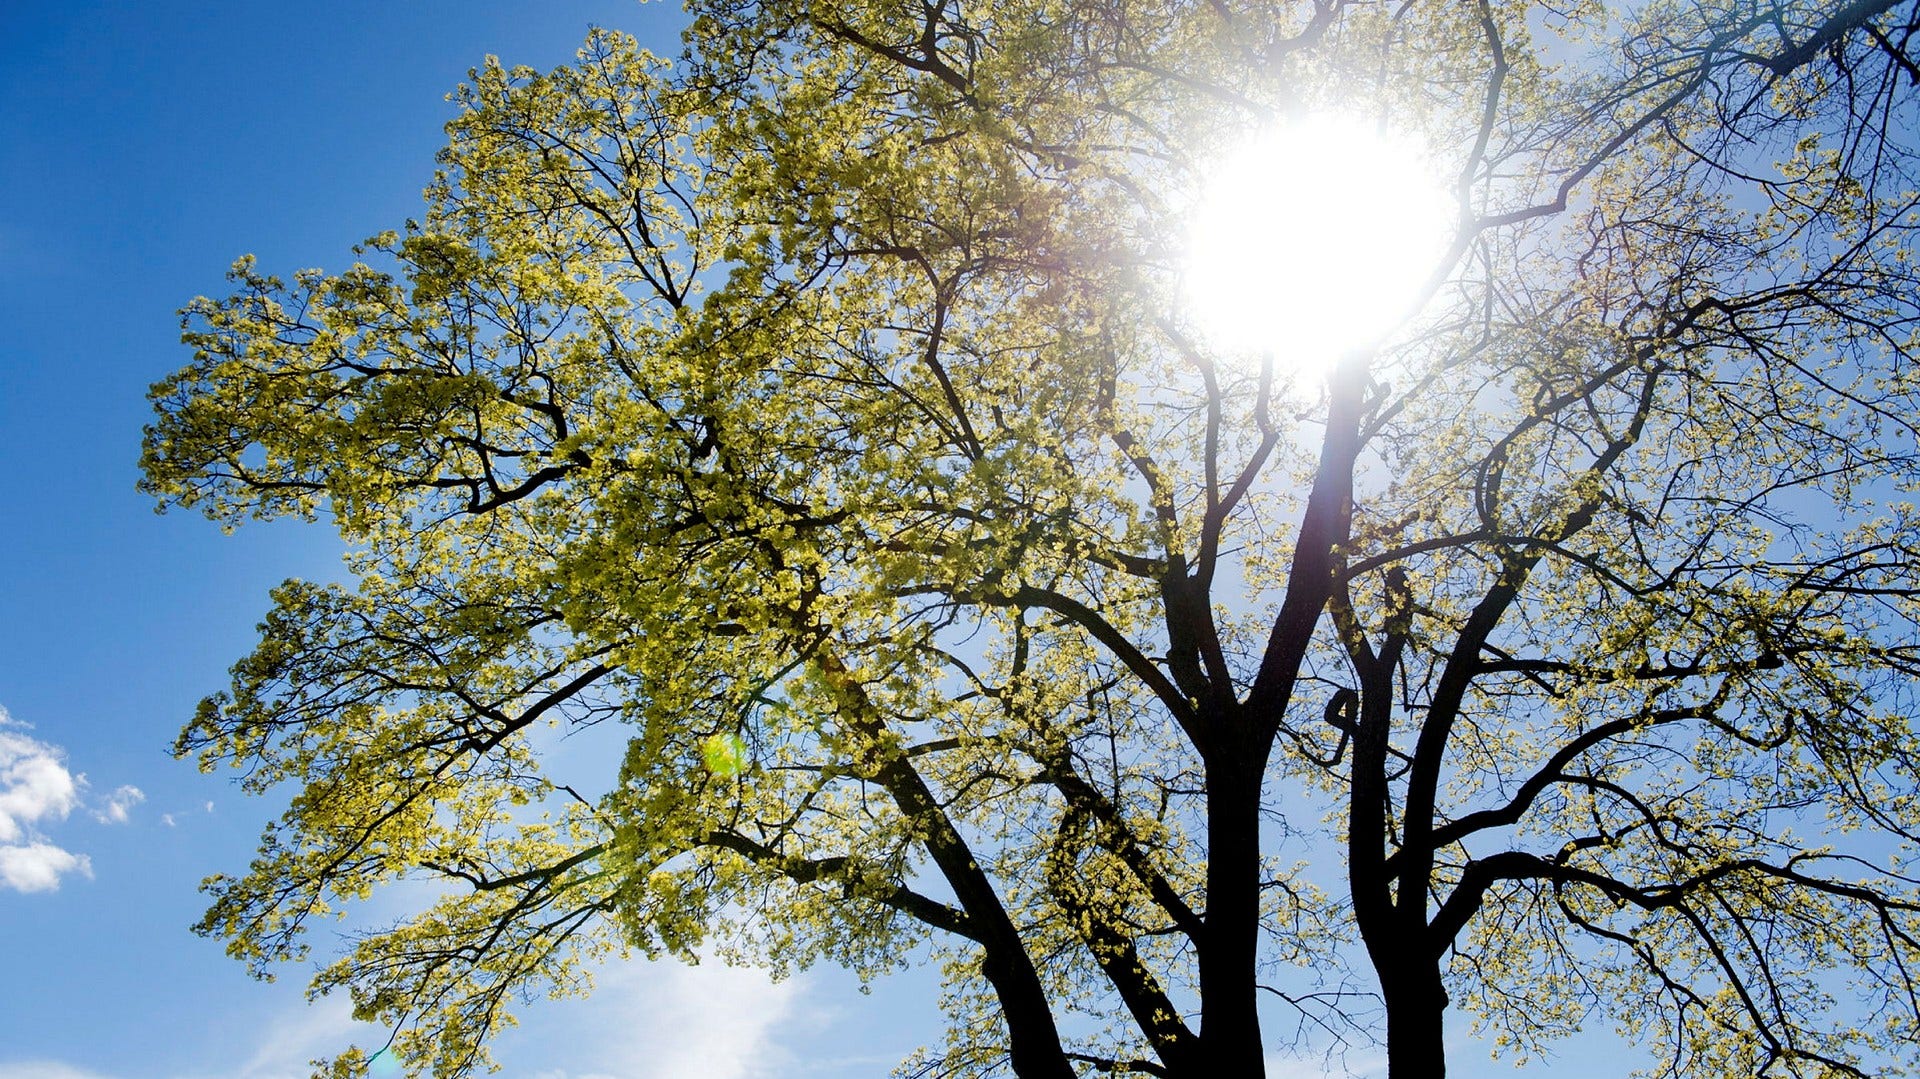 Lövträd är en alltför ovanlig syn i den svenska skogen, medger skribenten i ett svar på tre insändare.